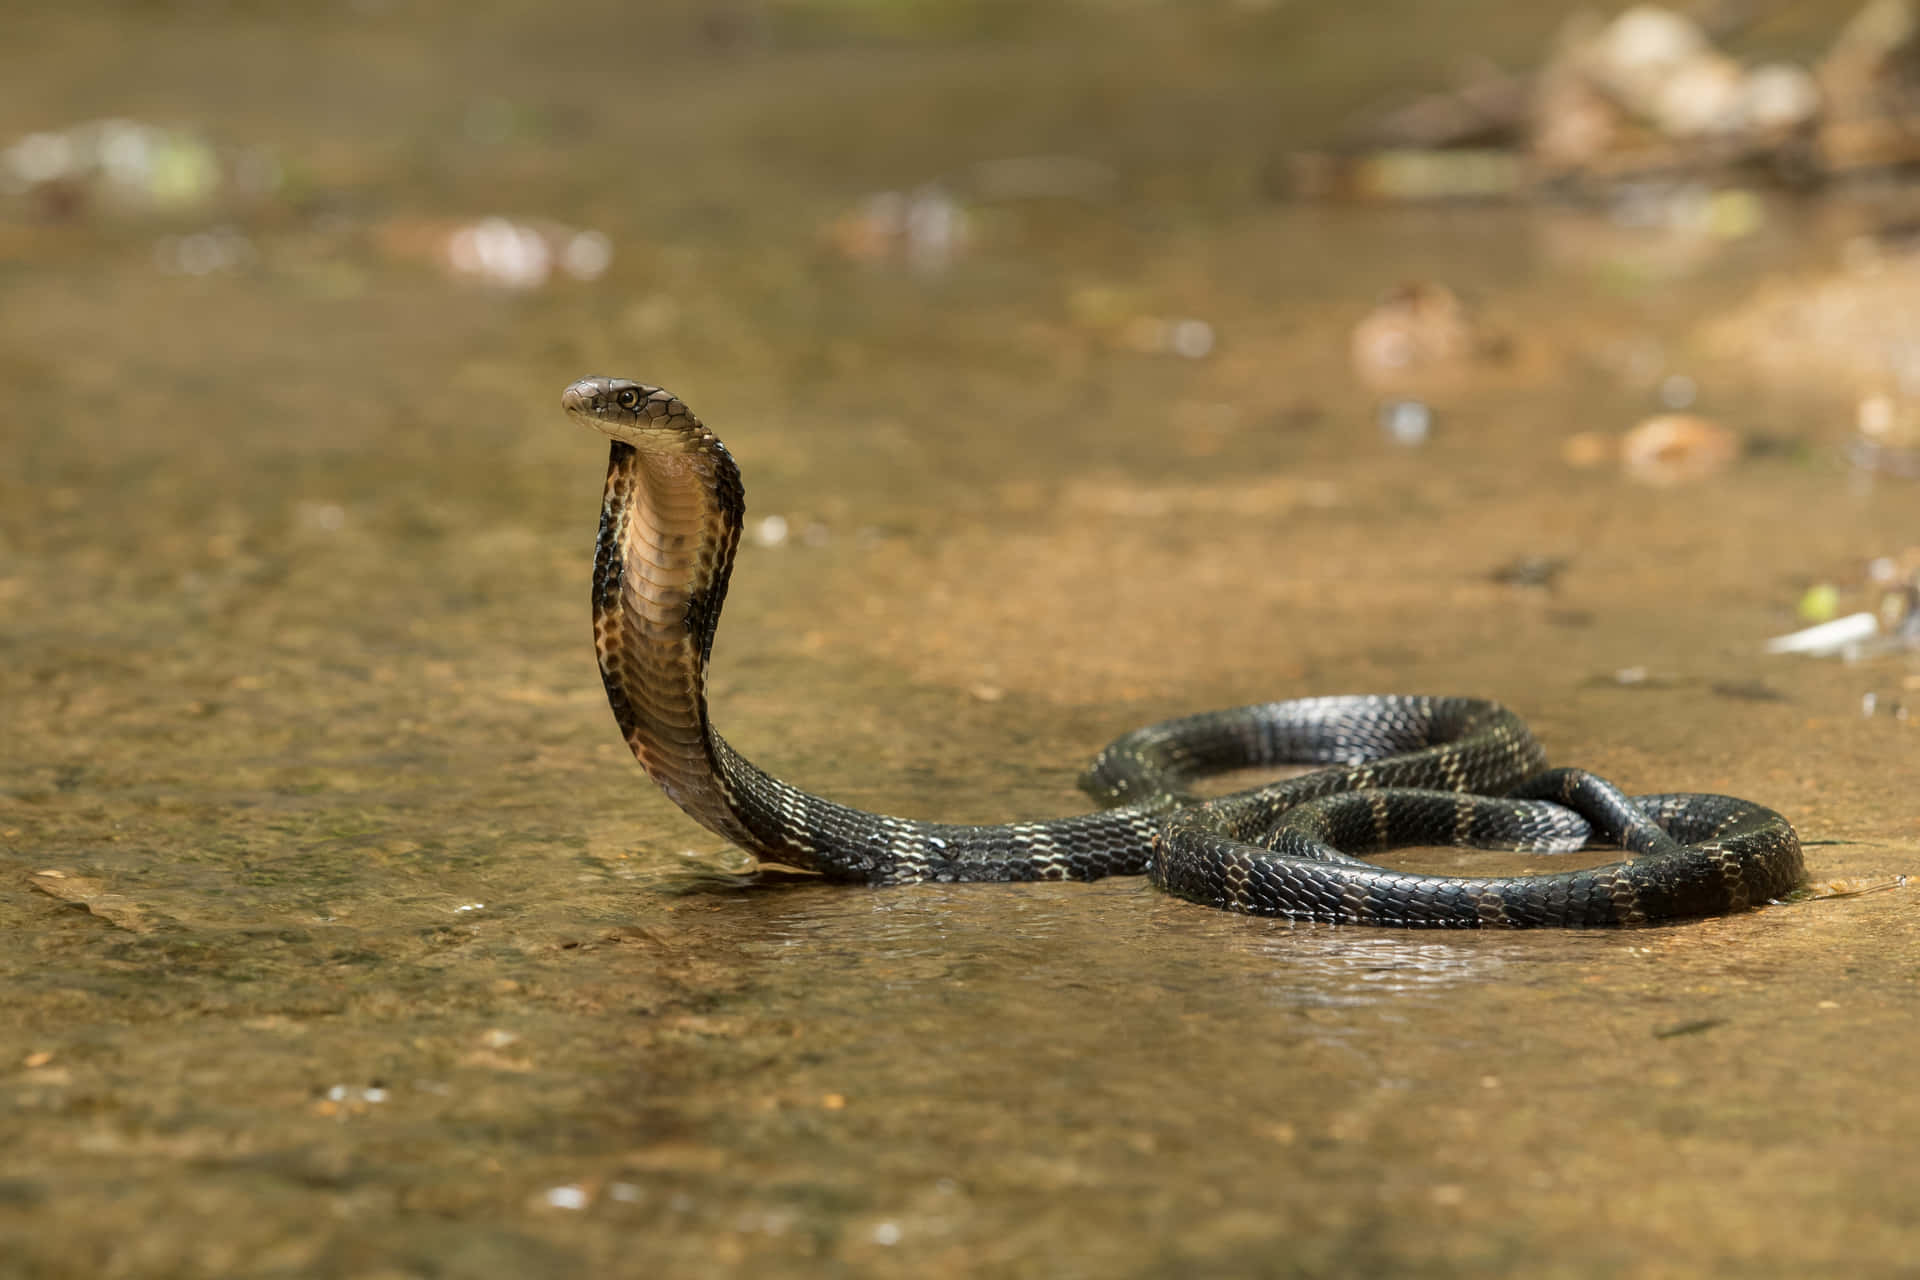 A King Cobra in its Natural Habitat